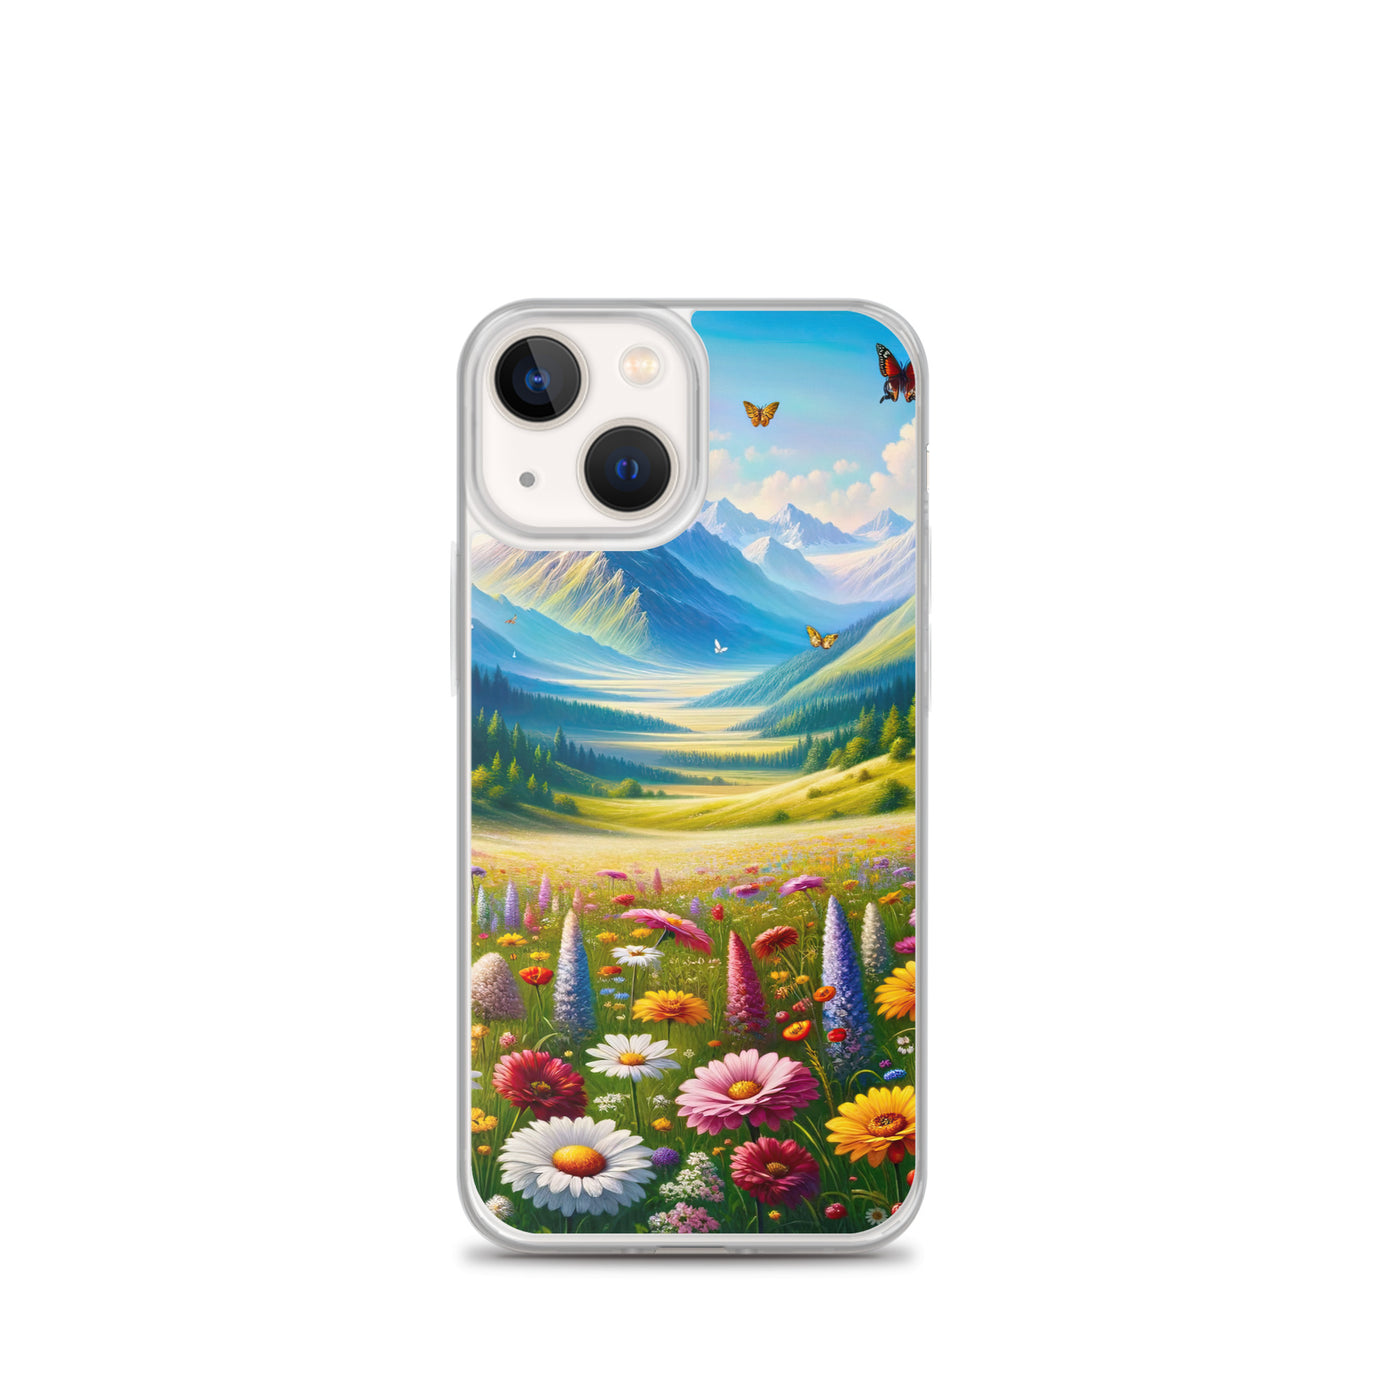 Ölgemälde einer ruhigen Almwiese, Oase mit bunter Wildblumenpracht - iPhone Schutzhülle (durchsichtig) camping xxx yyy zzz iPhone 13 mini